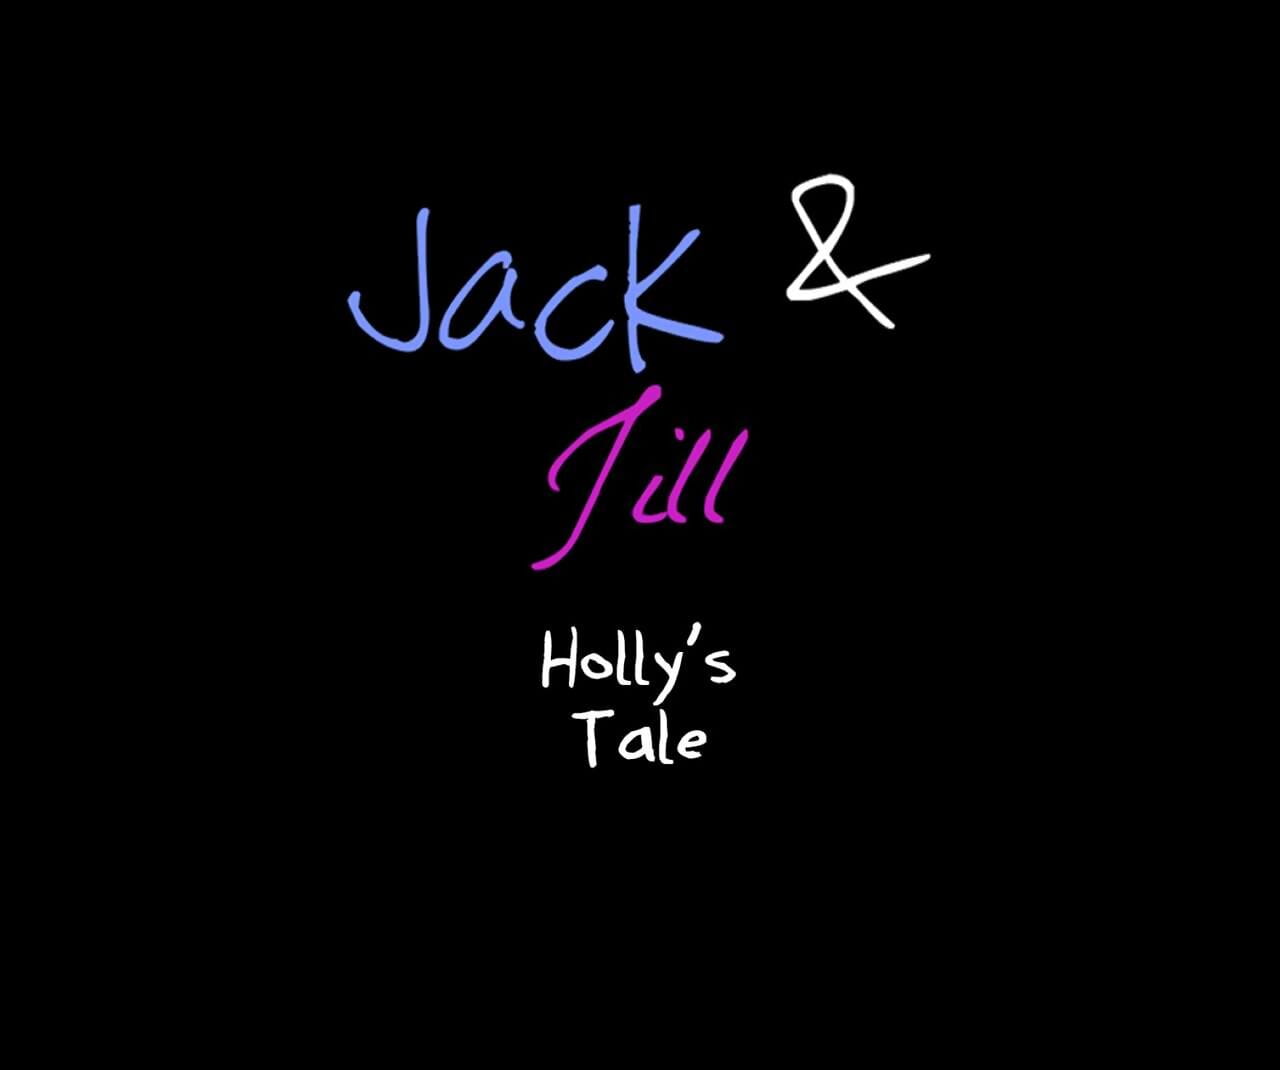 ジャック - ジル Hollys 物語 page 1